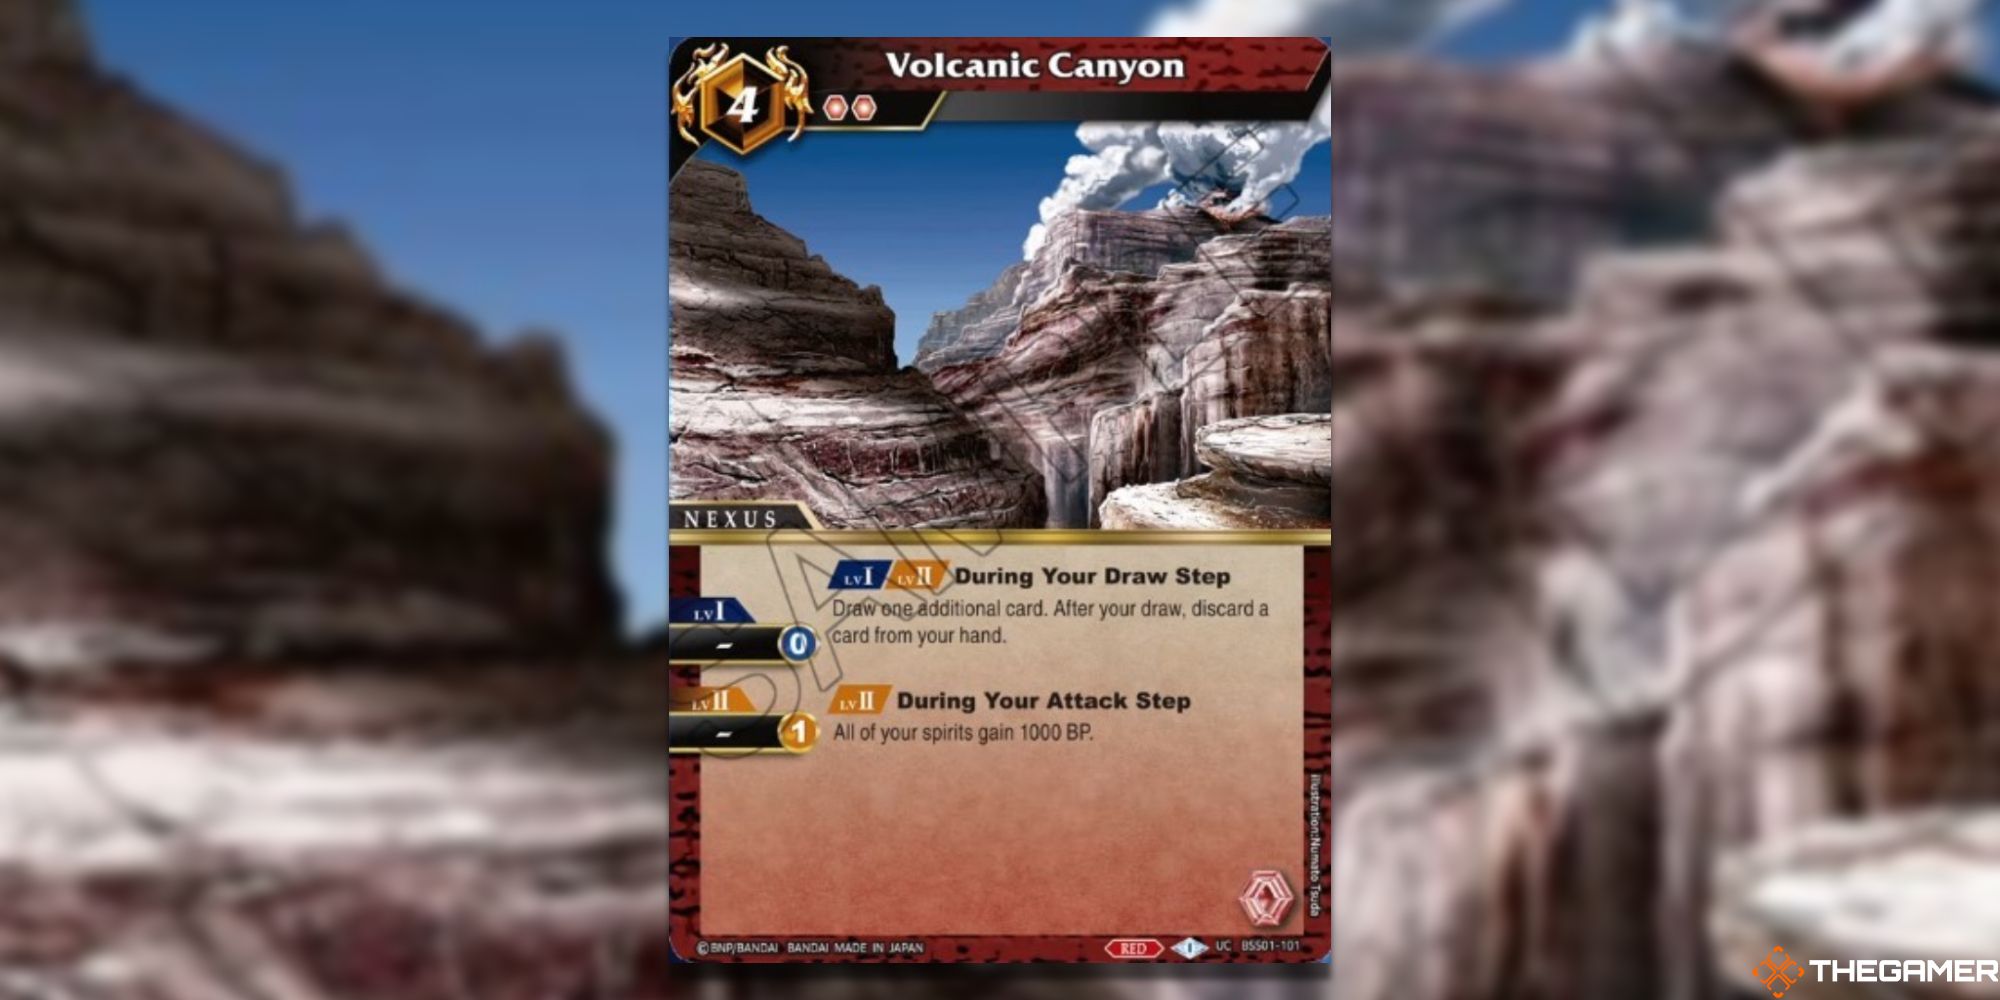 Volcanic Canyon Card from Battle Spirits Saga